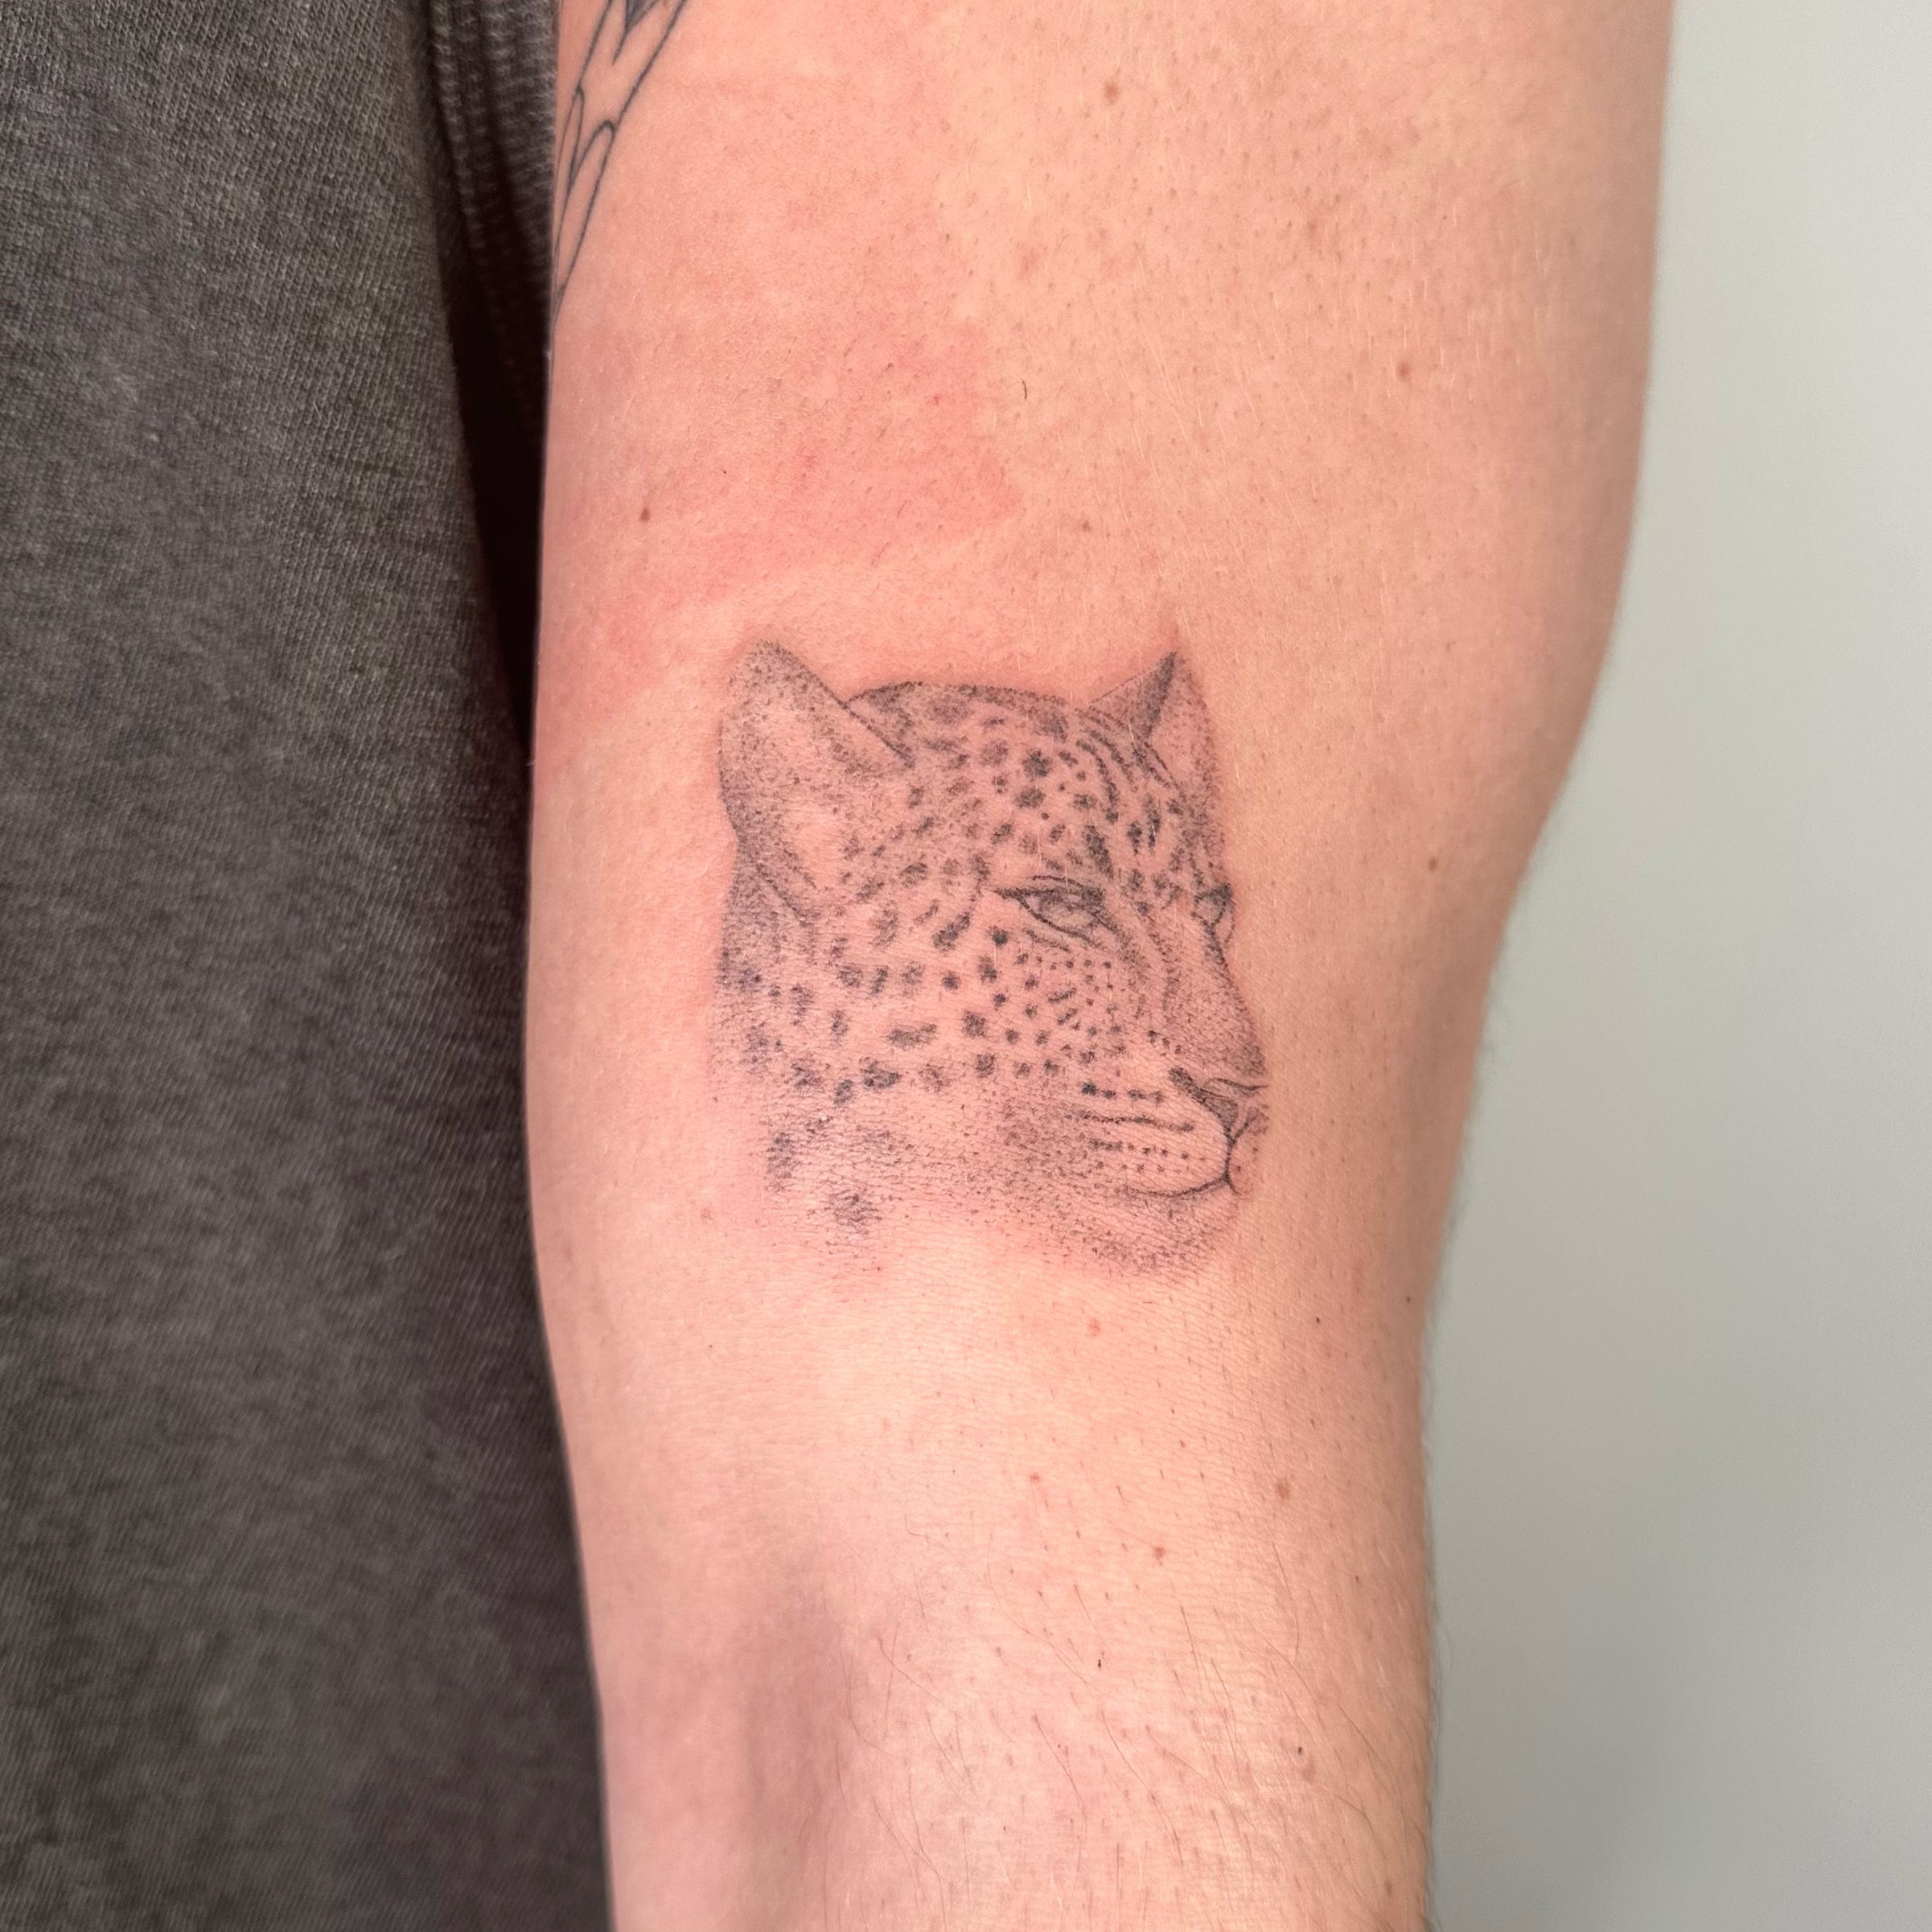 Moko Tattoos Malta - A fun one from today, baby leopard 🐆by Wenzu. . . . .  . #tattoo #tattooart #blackart #blackworker #blackink #blackwork  #blacktattoo #black #blackngrey #leopard #leopardtattoo #babyleopard  #smallfuntattoo #tattoomalta #